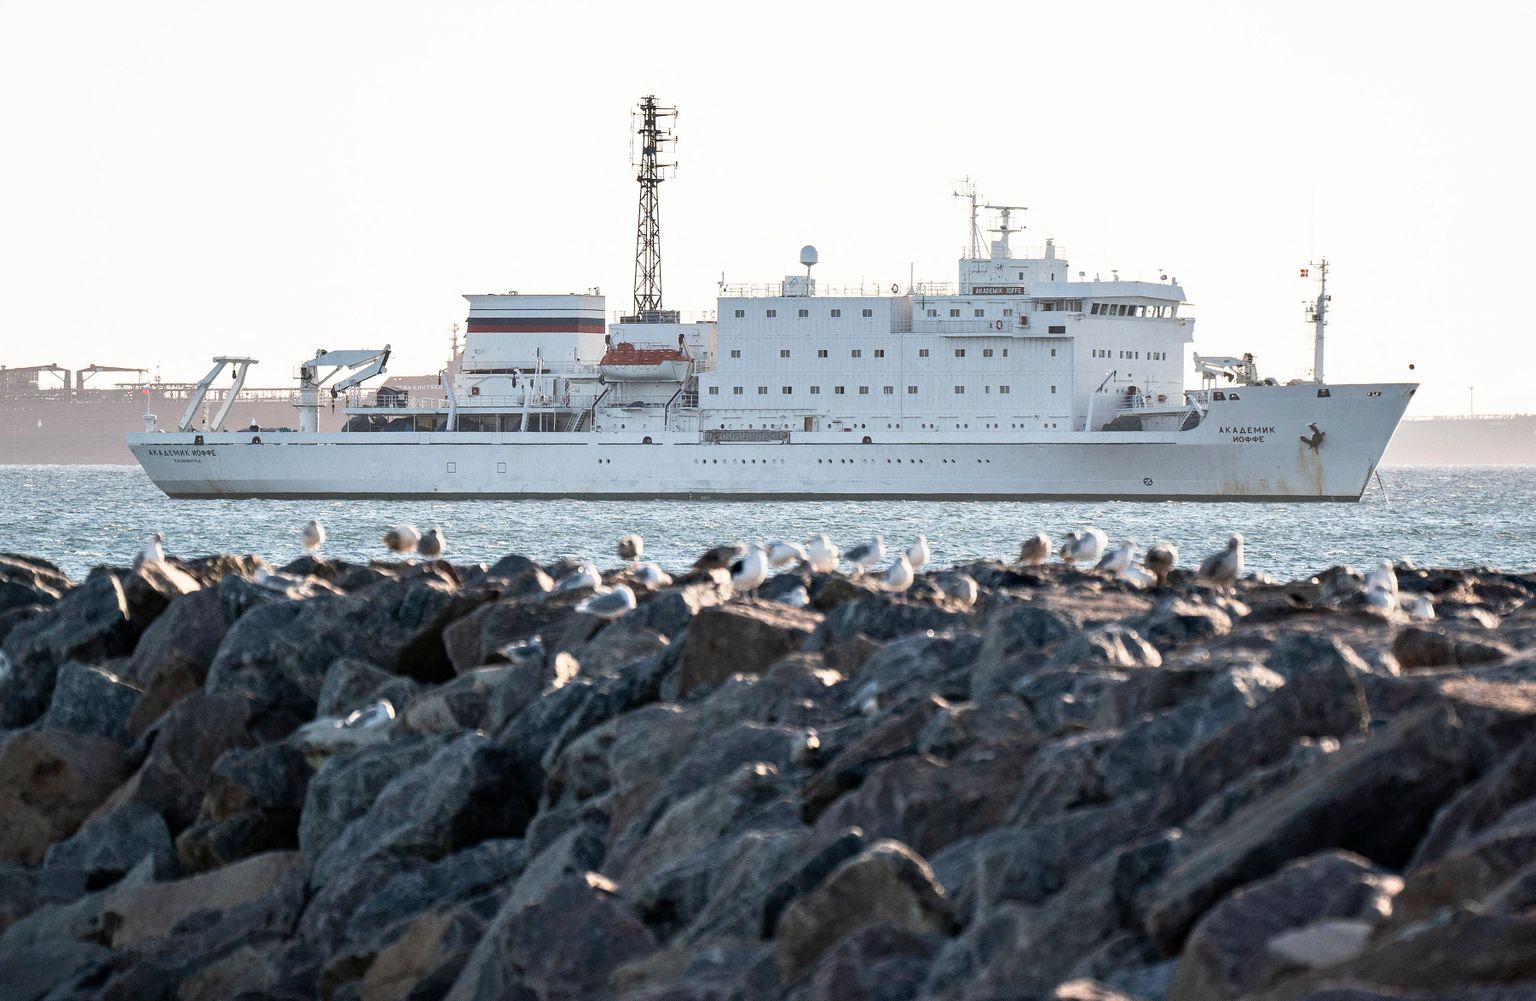 Venemaa uurimislaev Akademik Ioffe peeti Kanada firma kohtuhagi alusel kinni Skageni sadamas Taanis